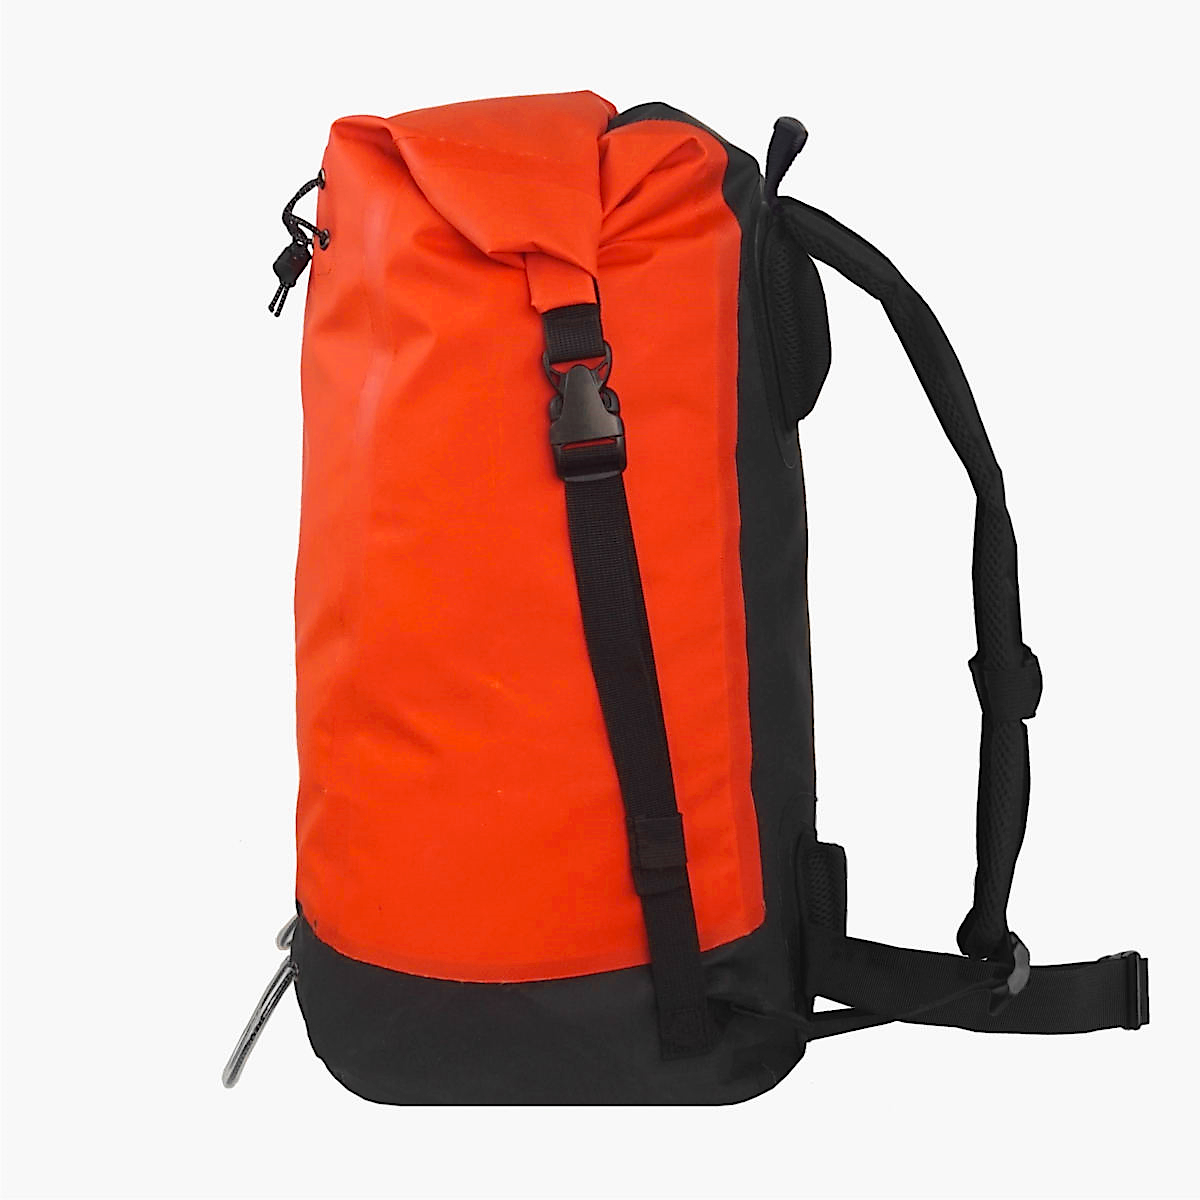 Waterproof Backpack Sack Roll-Top Closure Dry Bag, Green